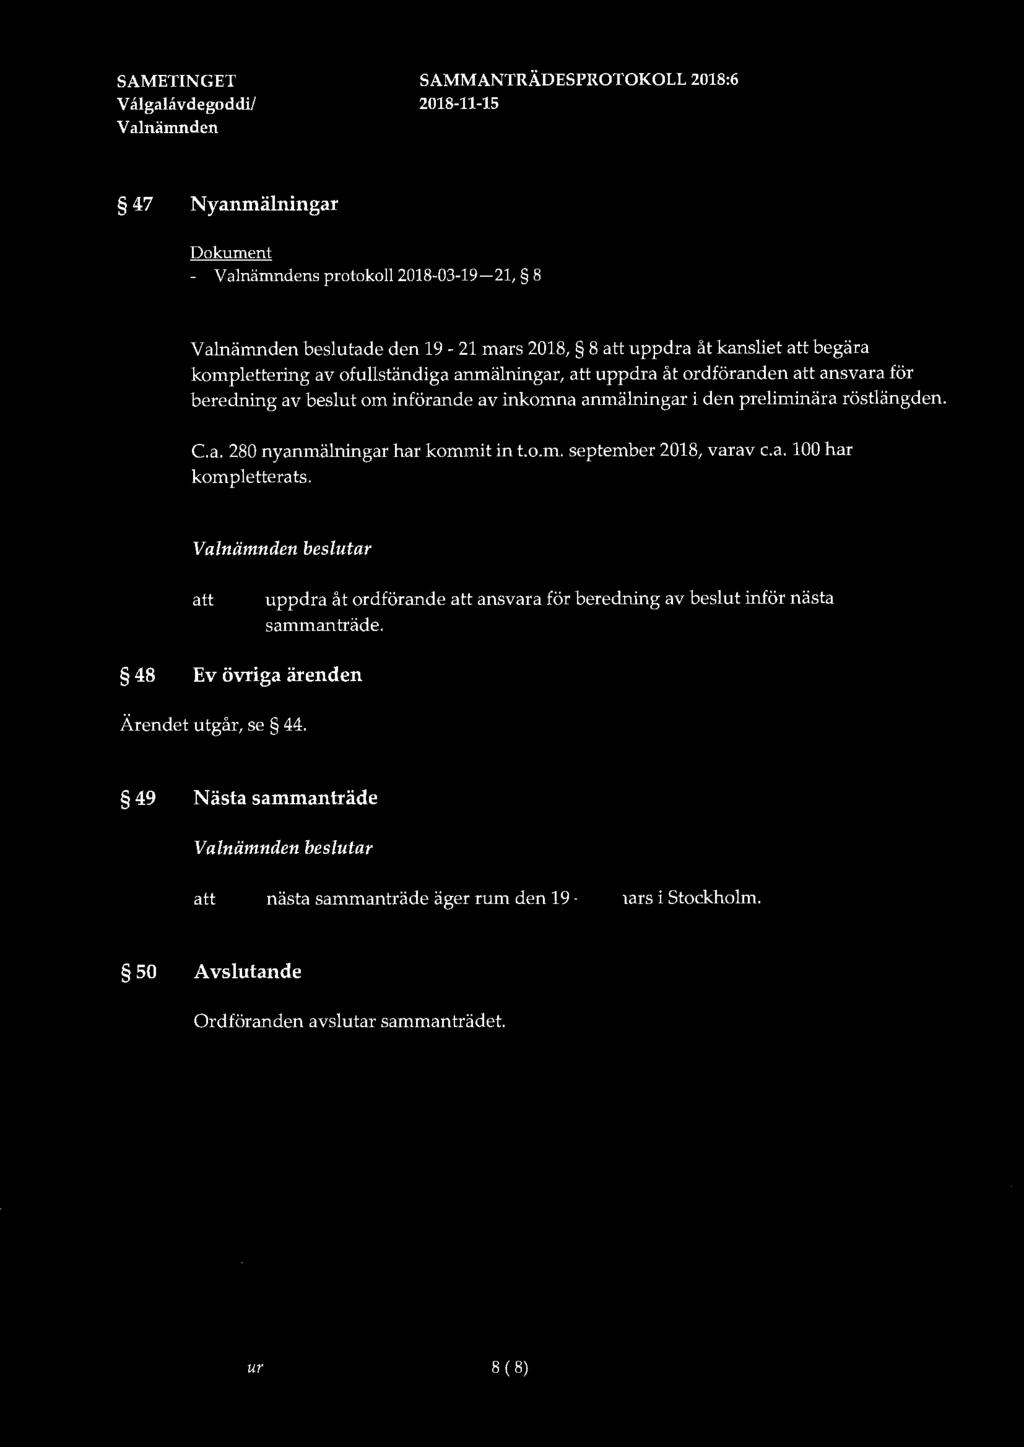 SAMETINGET V ålgalåvdegoddi/ Valnämnden SAMMANTRÄDESPROTOKOLL 2018:6 47 Nyanmälningar Dokument - Valnämndens protokoll 2018-03-19-21,